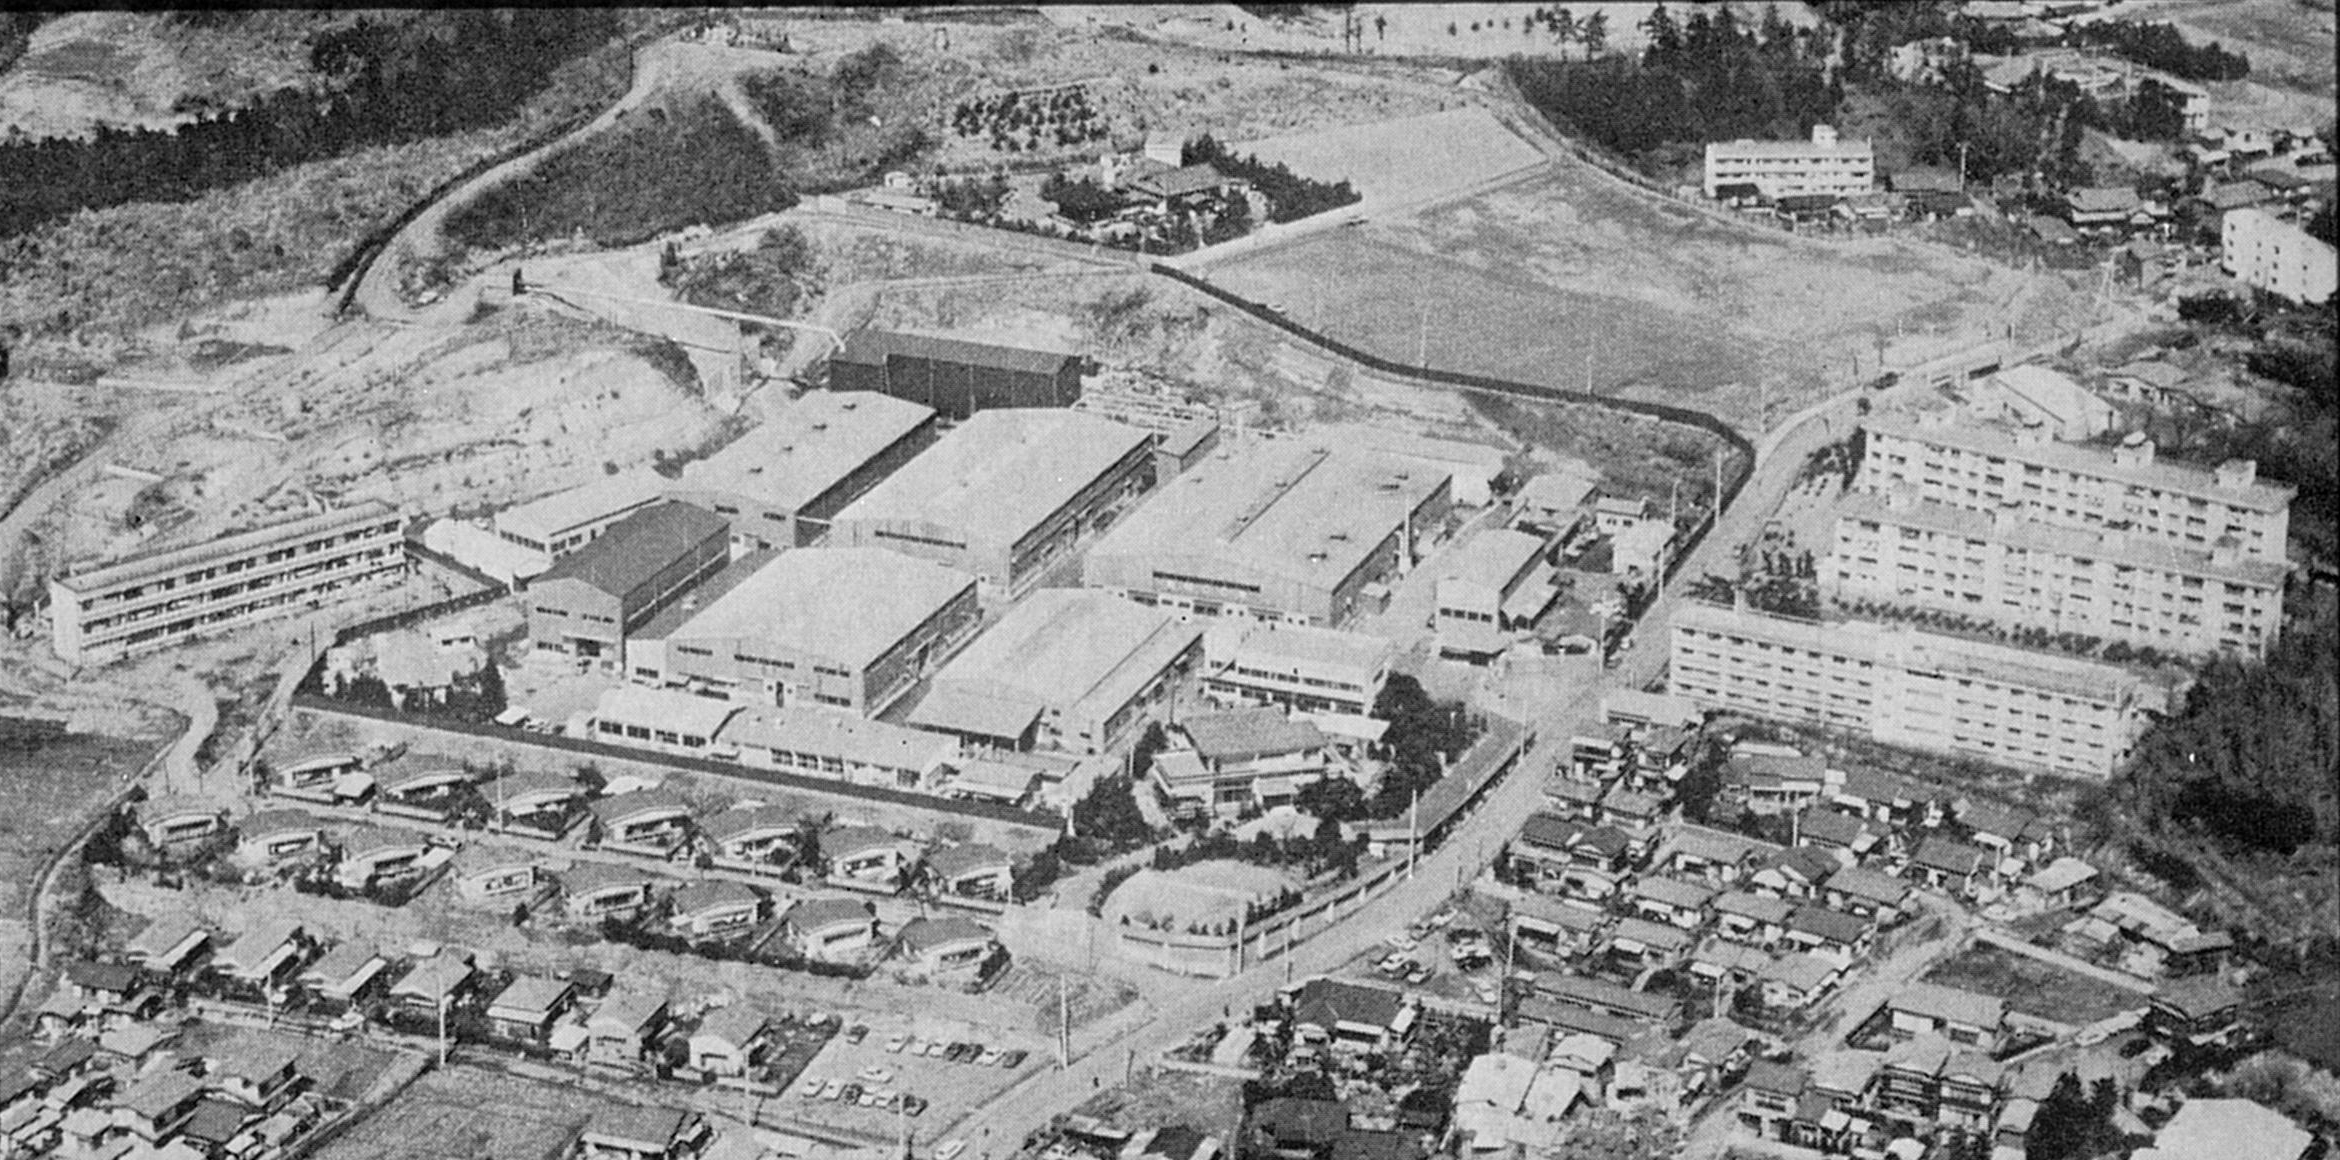 1963年 可変ピッチプロペラの今後の需要拡大に備え、現在の所在地である横浜市戸塚区に工場を新設・移転